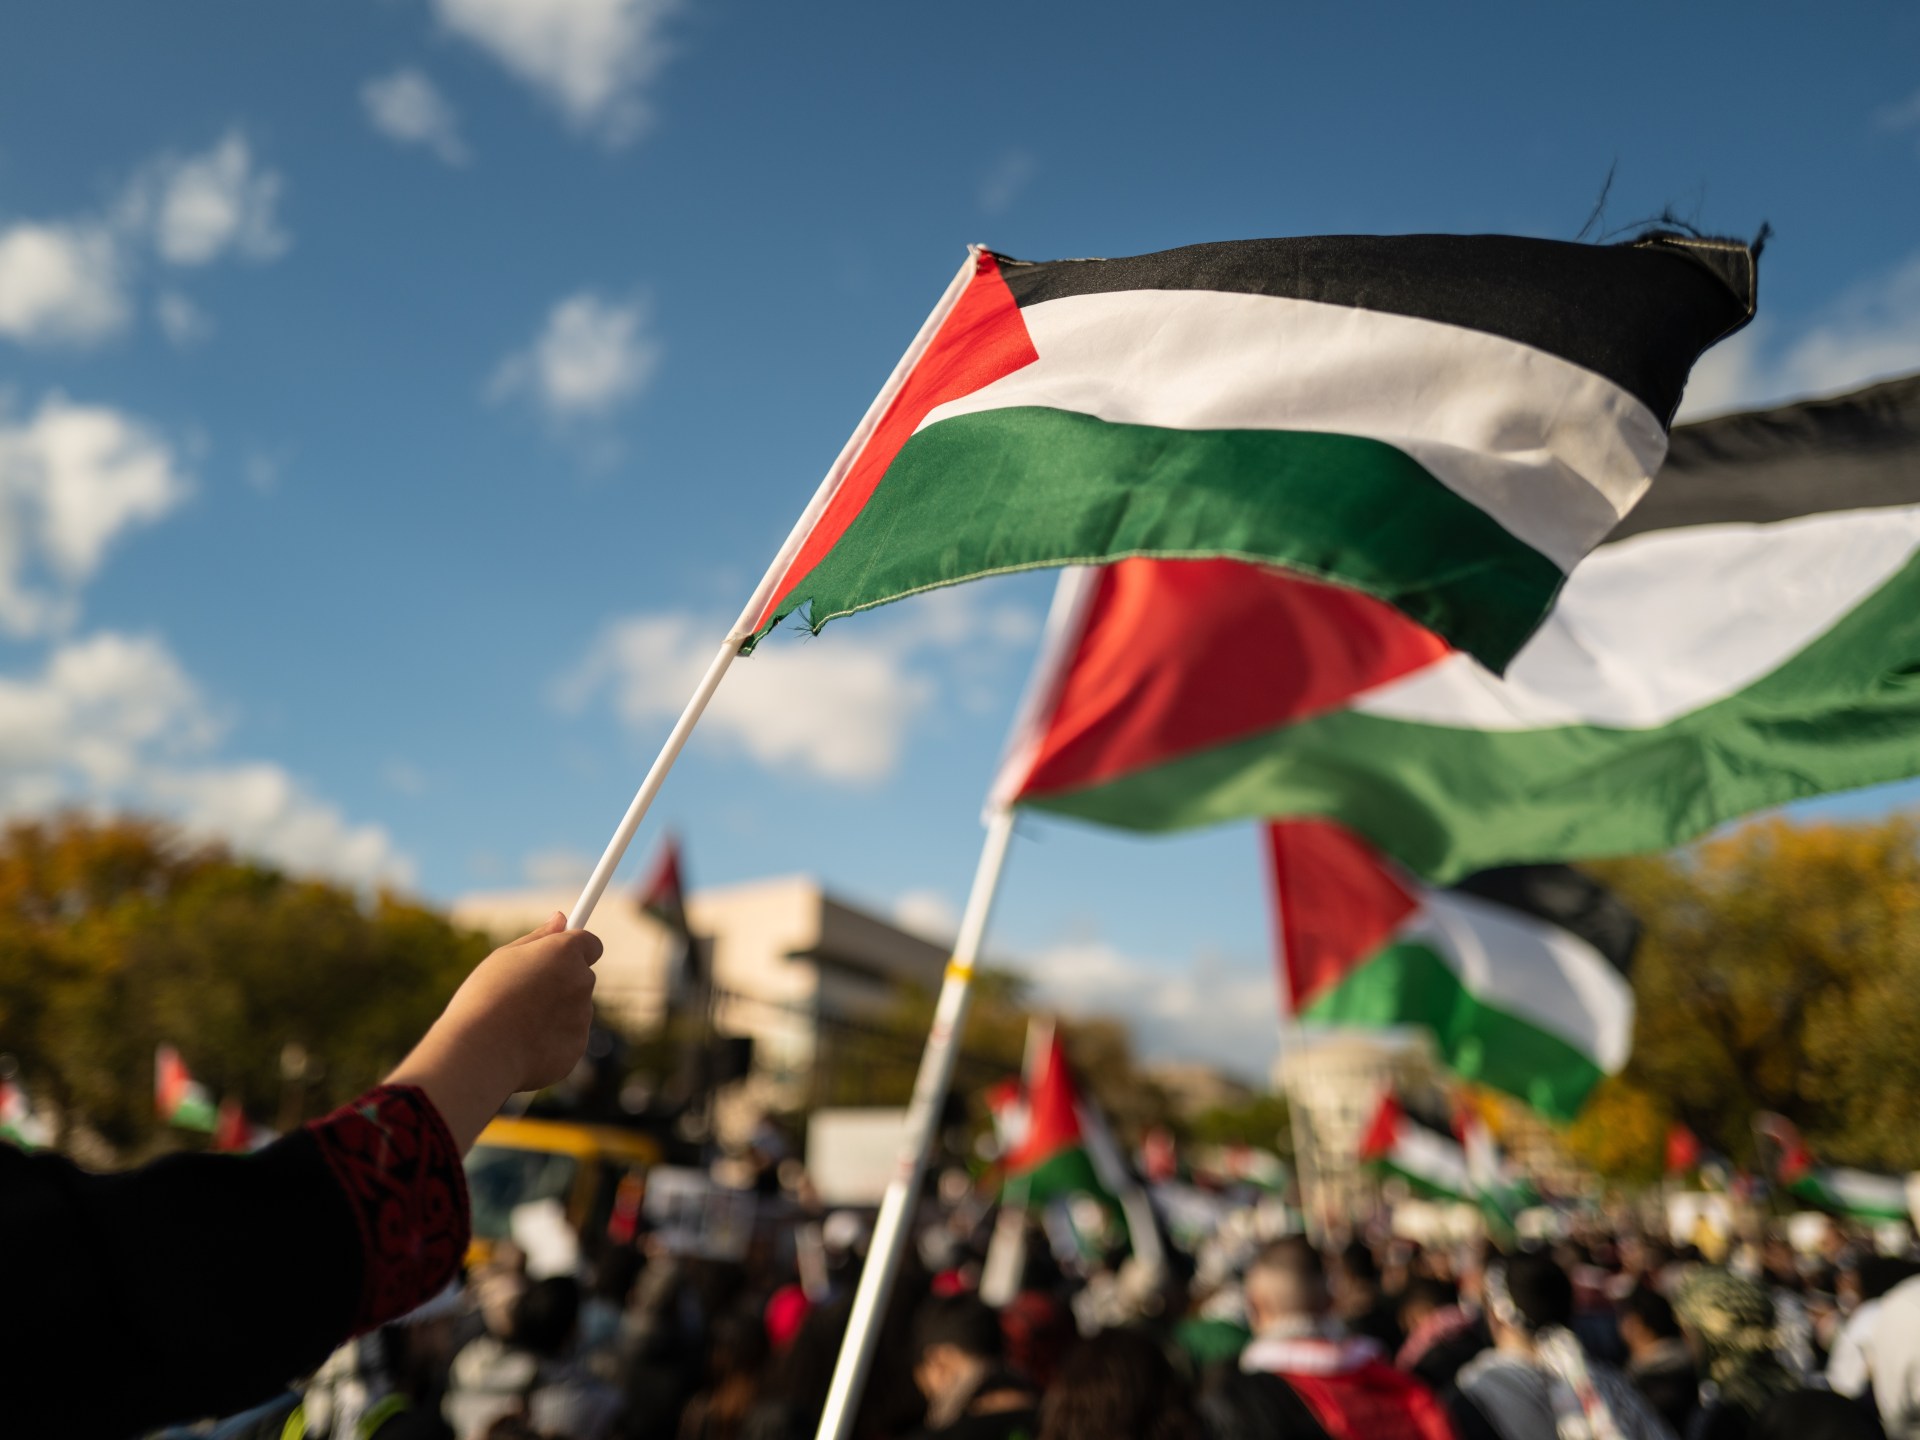 ترحيب عربي واسع وغضب إسرائيلي عارم باعتراف دول أوروبية بفلسطين | أخبار – البوكس نيوز